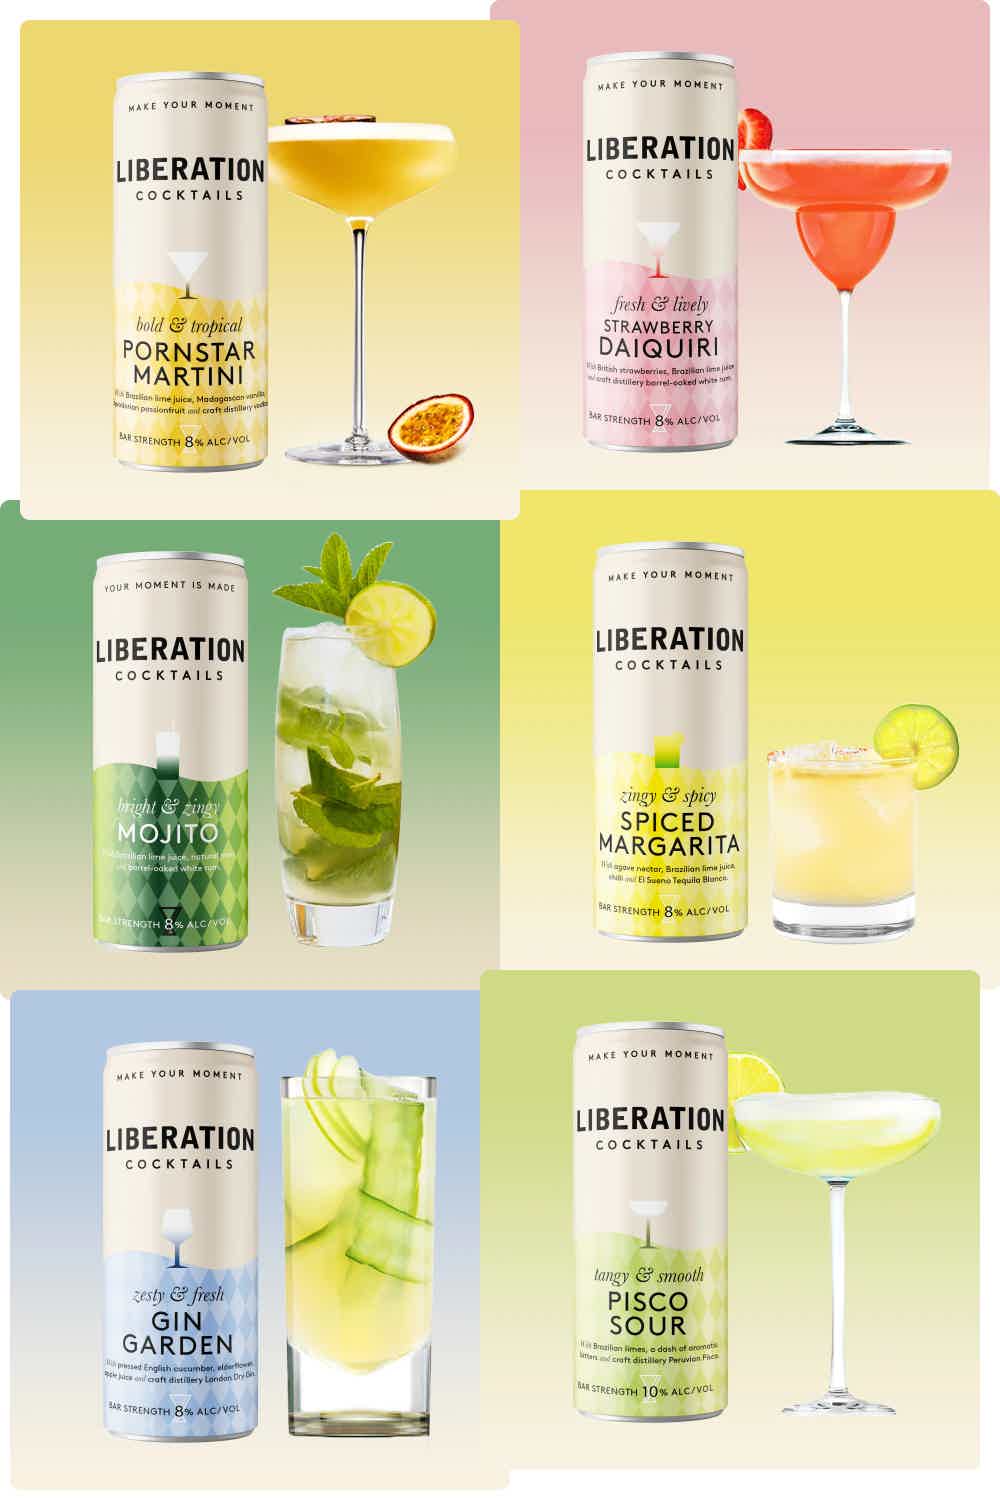 Liberation Tasting Kit: Gin Garden, Spiced Margarita, Pisco Sour, Mojito, Strawberry Daiquiri, Pornstar Martini